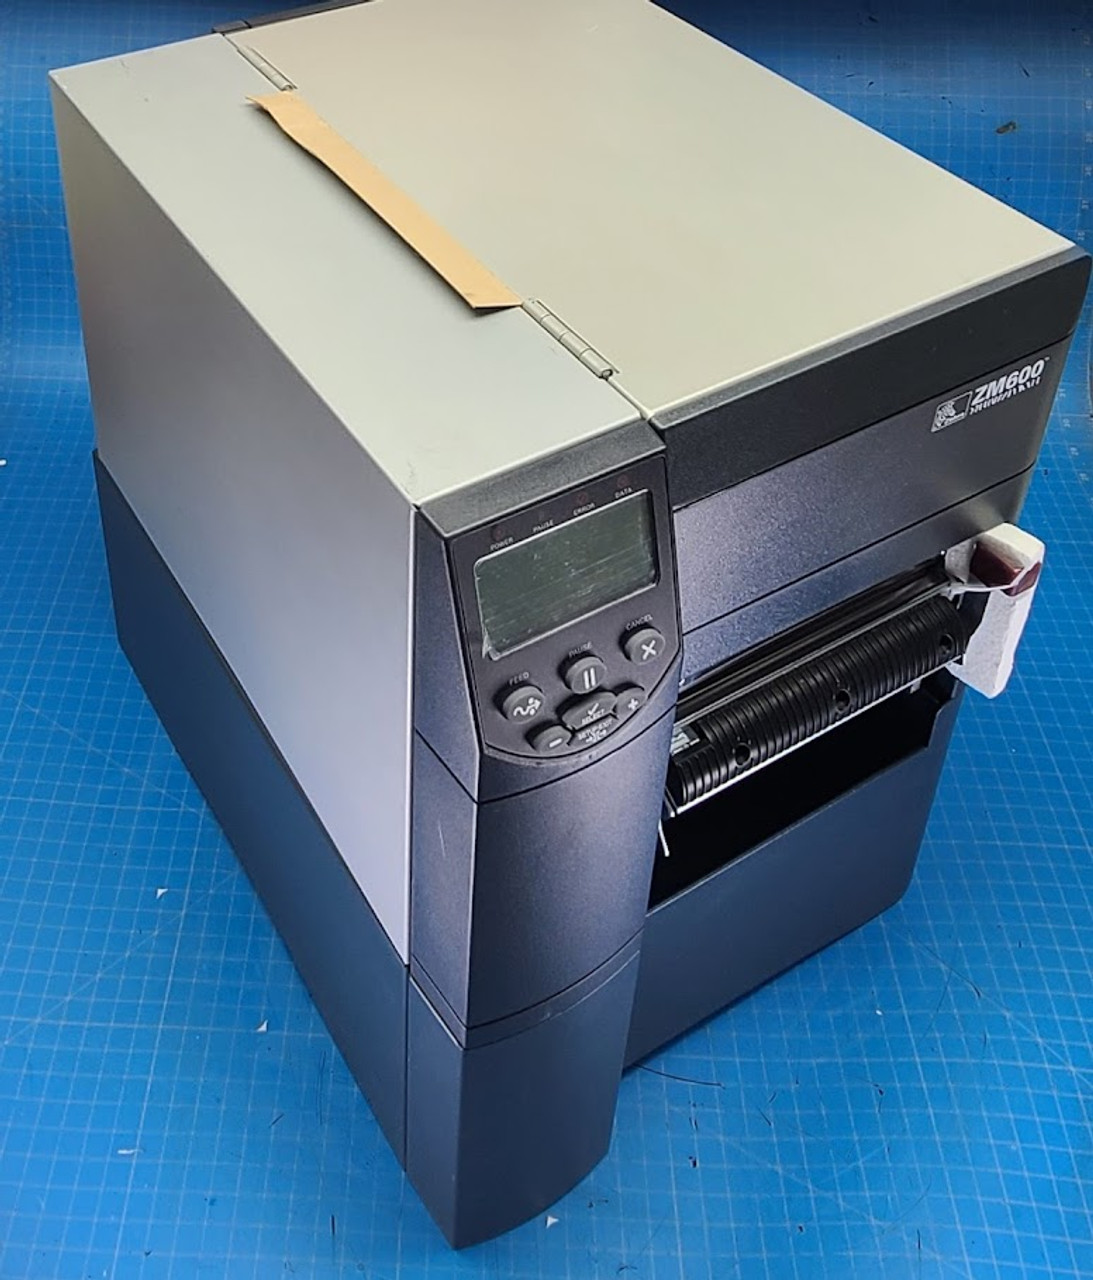 Zebra ZM600 Label Printer ZM600-3001-5000T